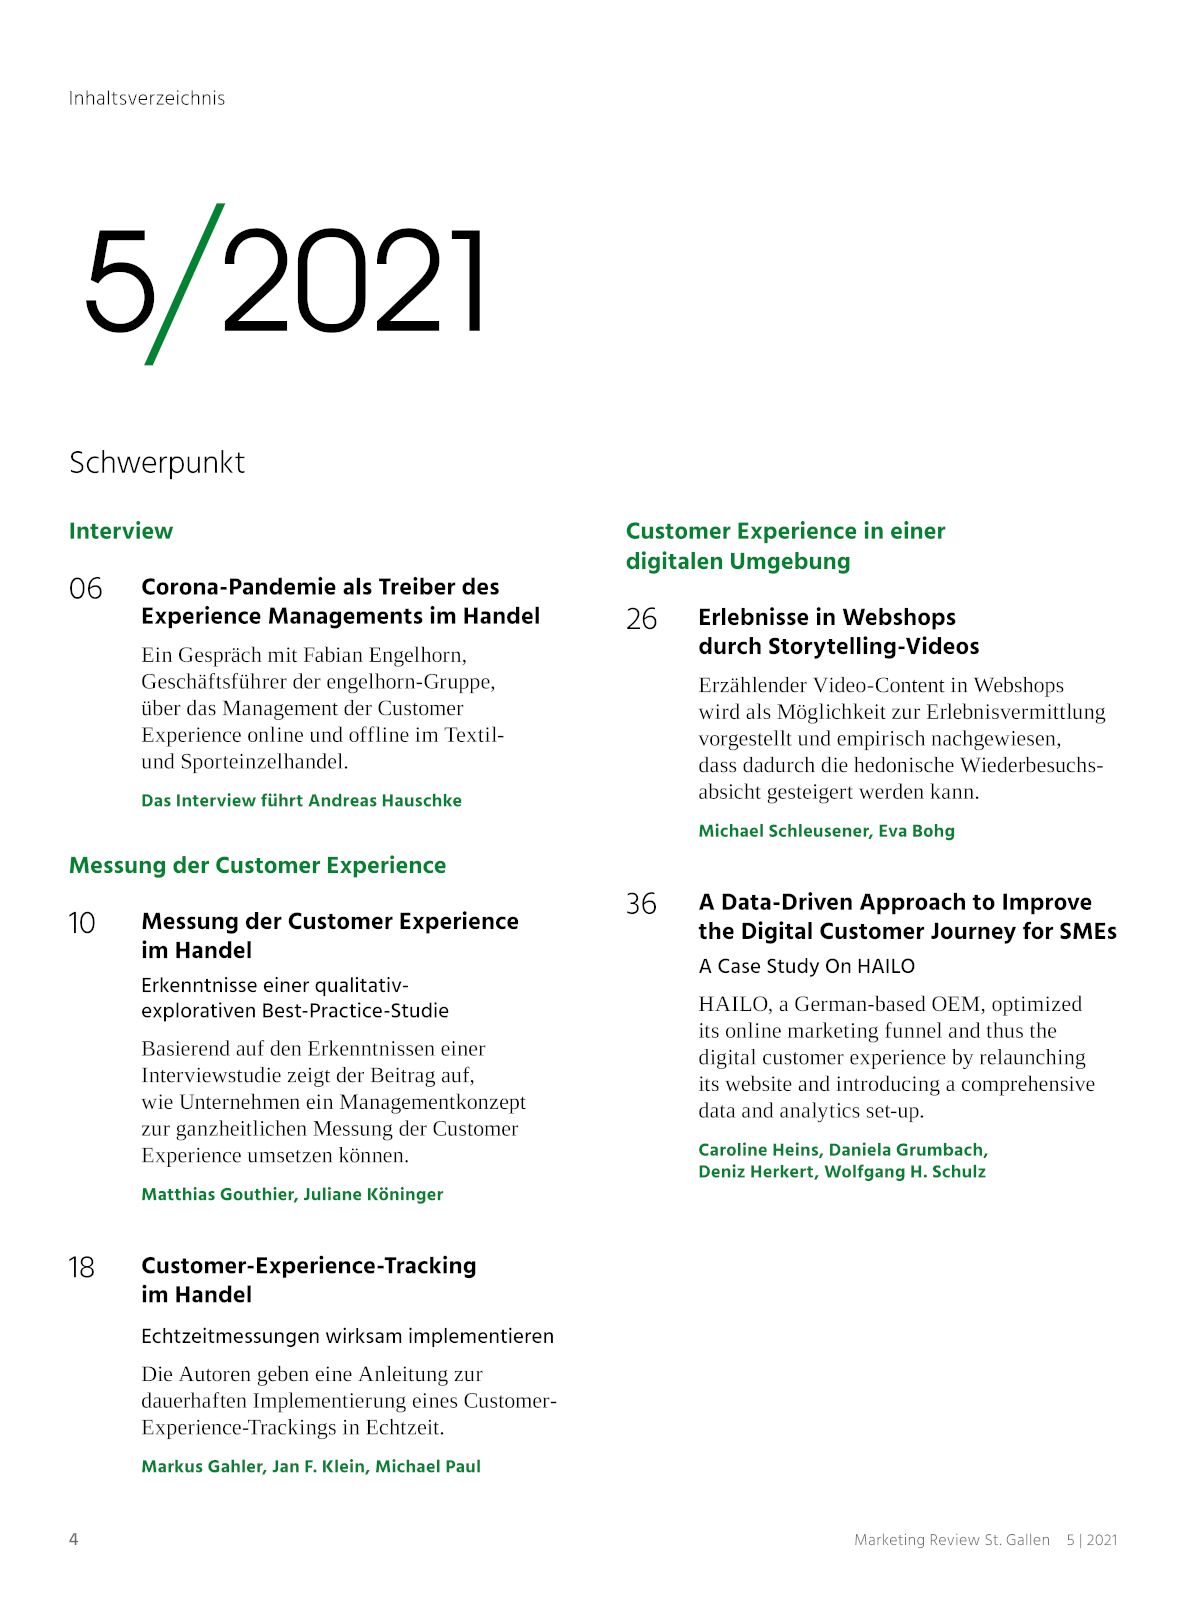 Marketing Review 5-2021 Inhaltsverzeichnis